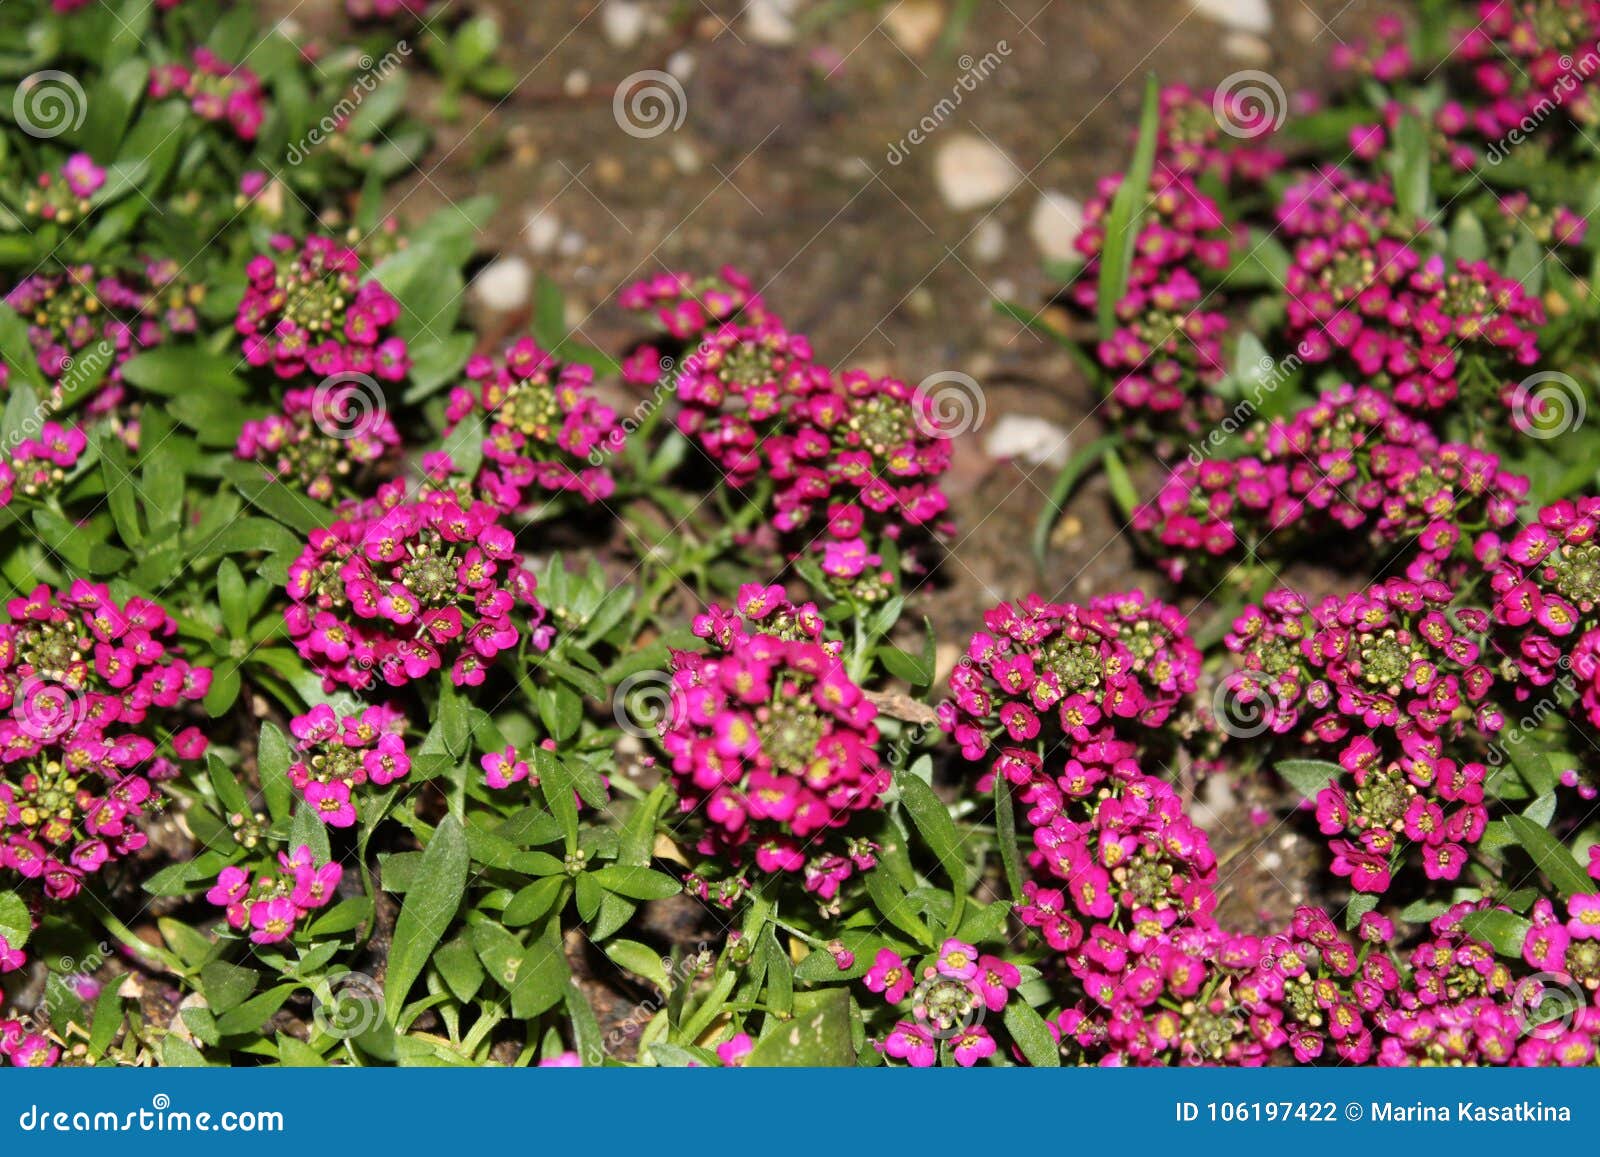 Las flores más pequeñas foto de archivo. Imagen de hierba - 106197422